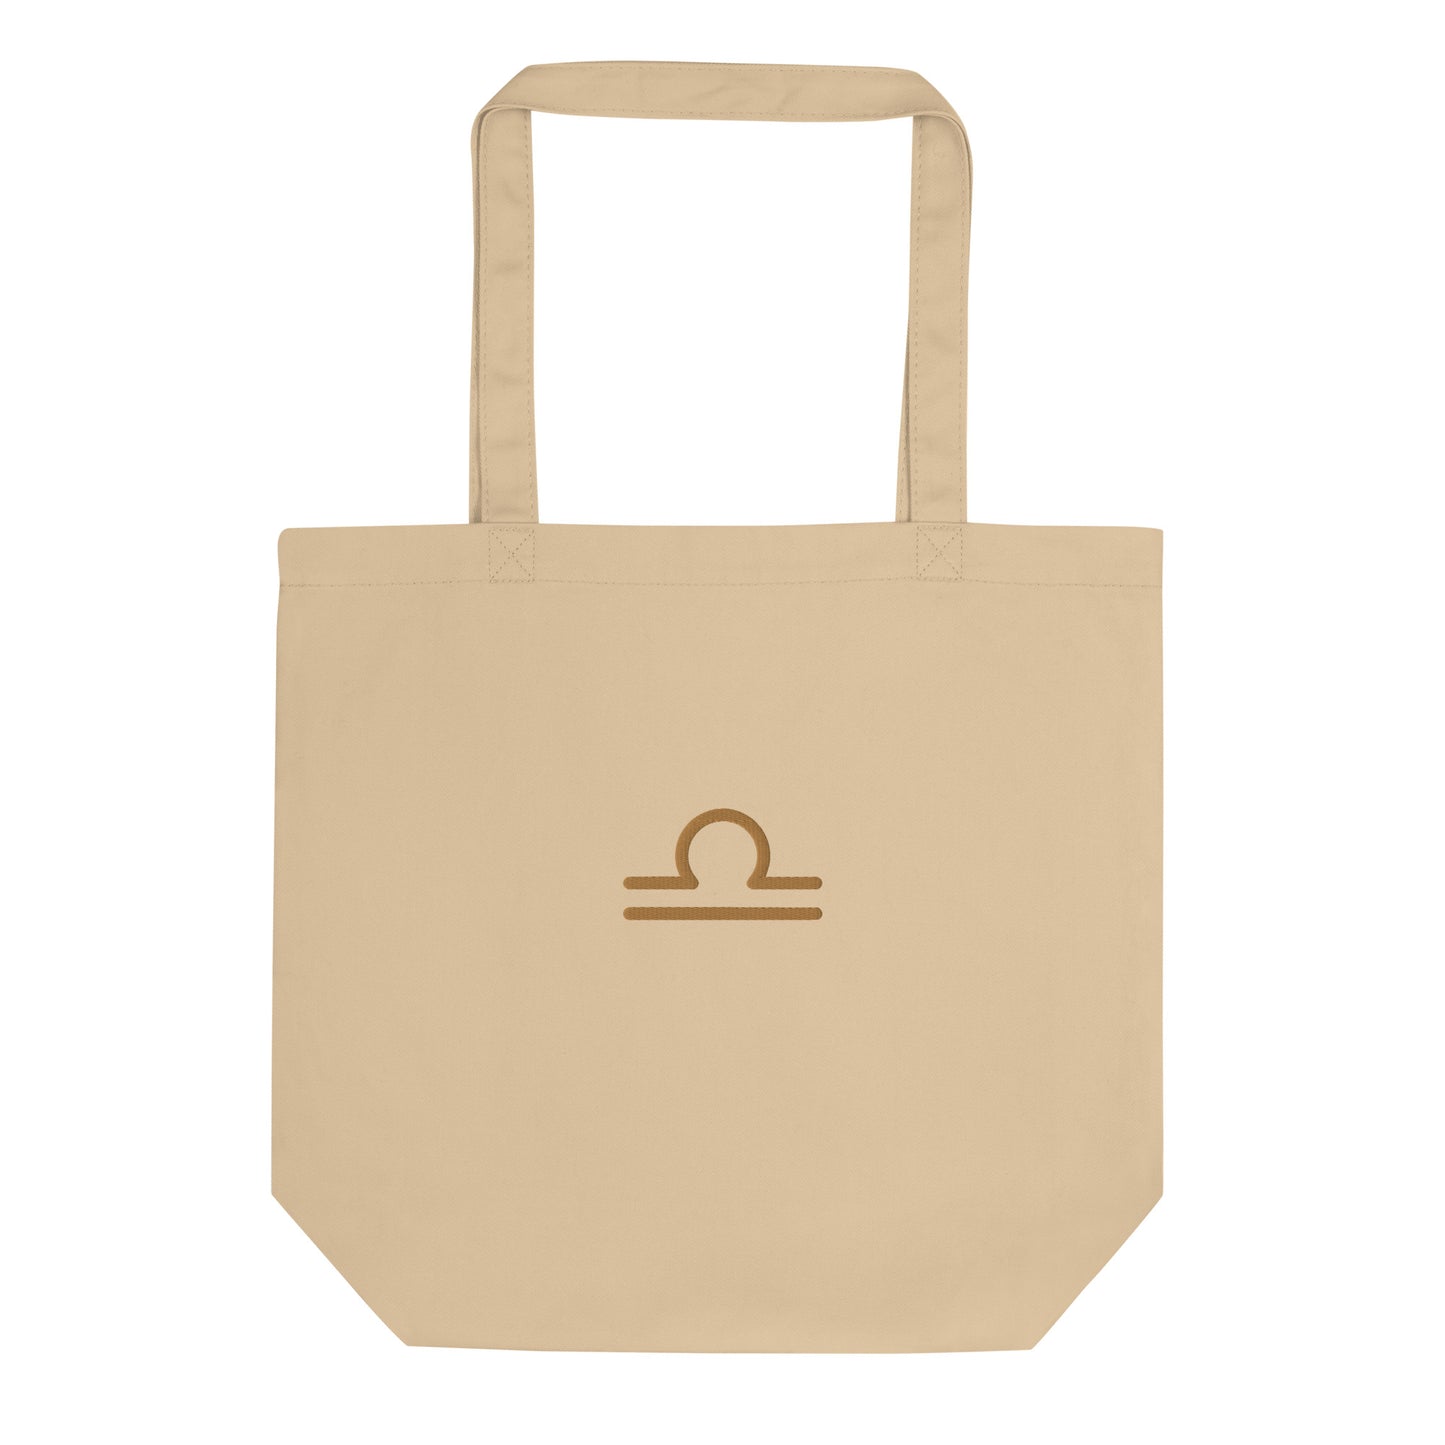 Libra - Small Open Tote Bag - Gold Thread